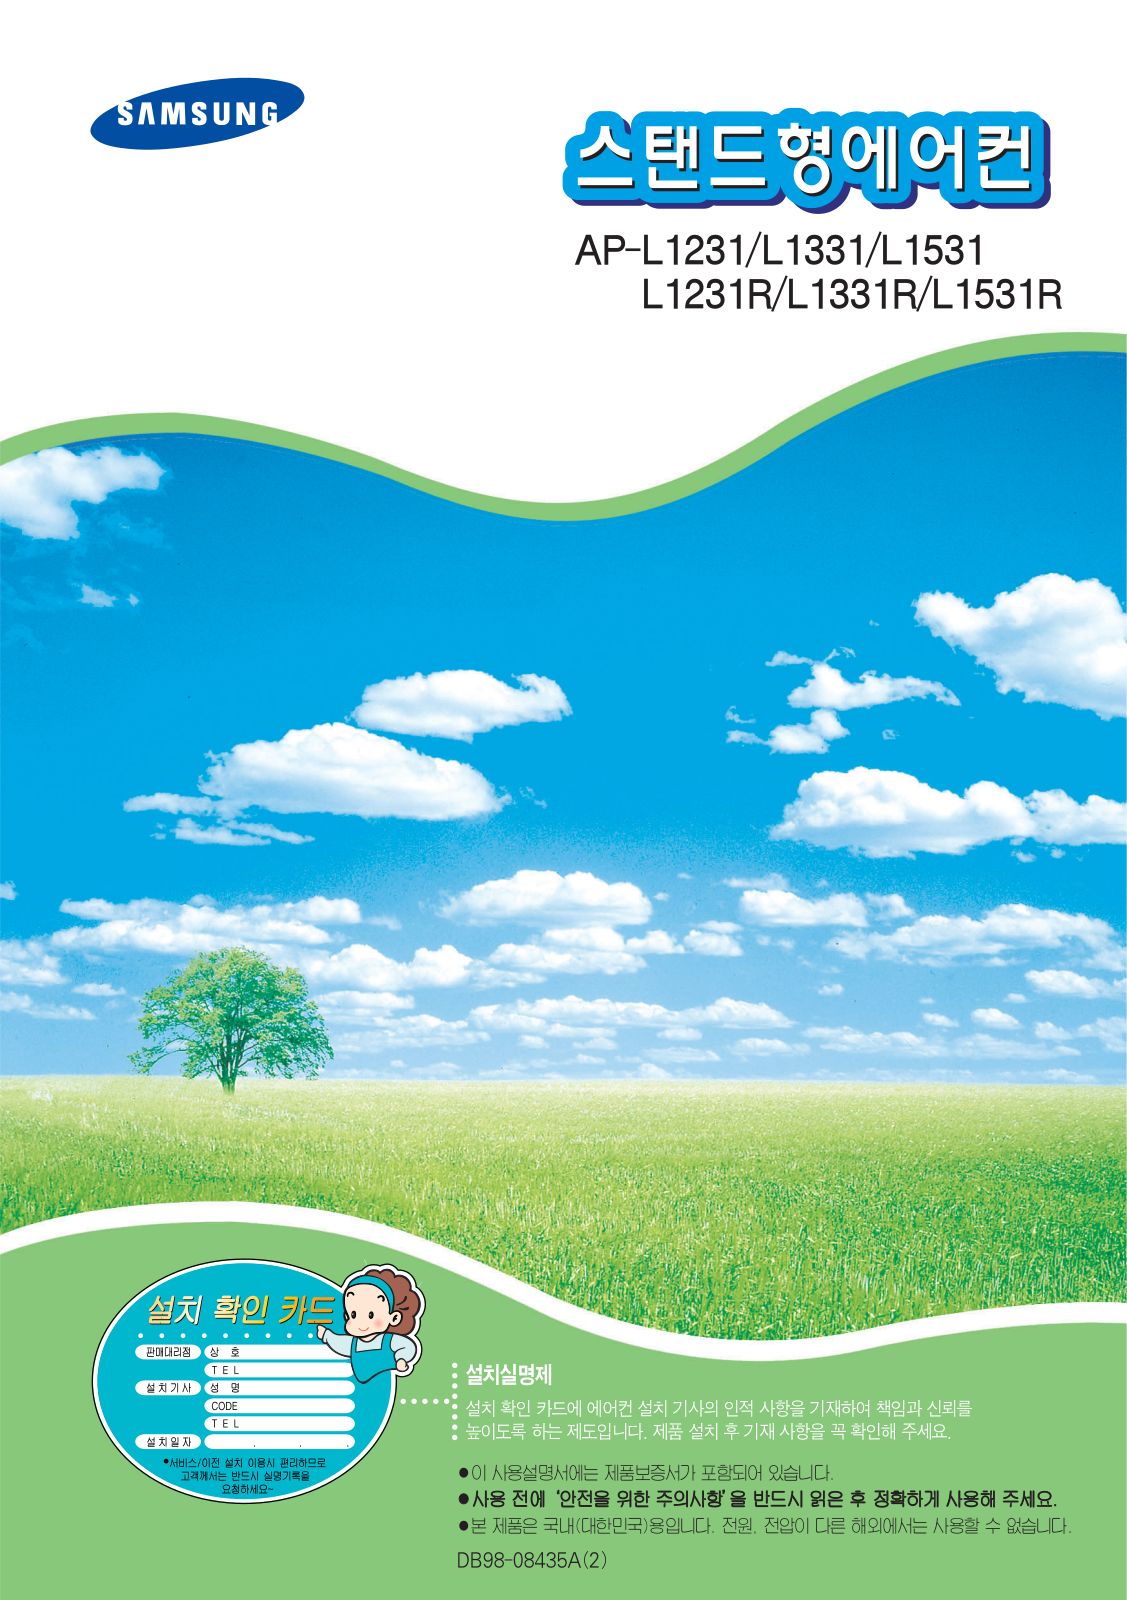 Samsung AP-L1531R, AP-L1531, AP-L1331R, AP-L1331, AP-L1231R User Manual